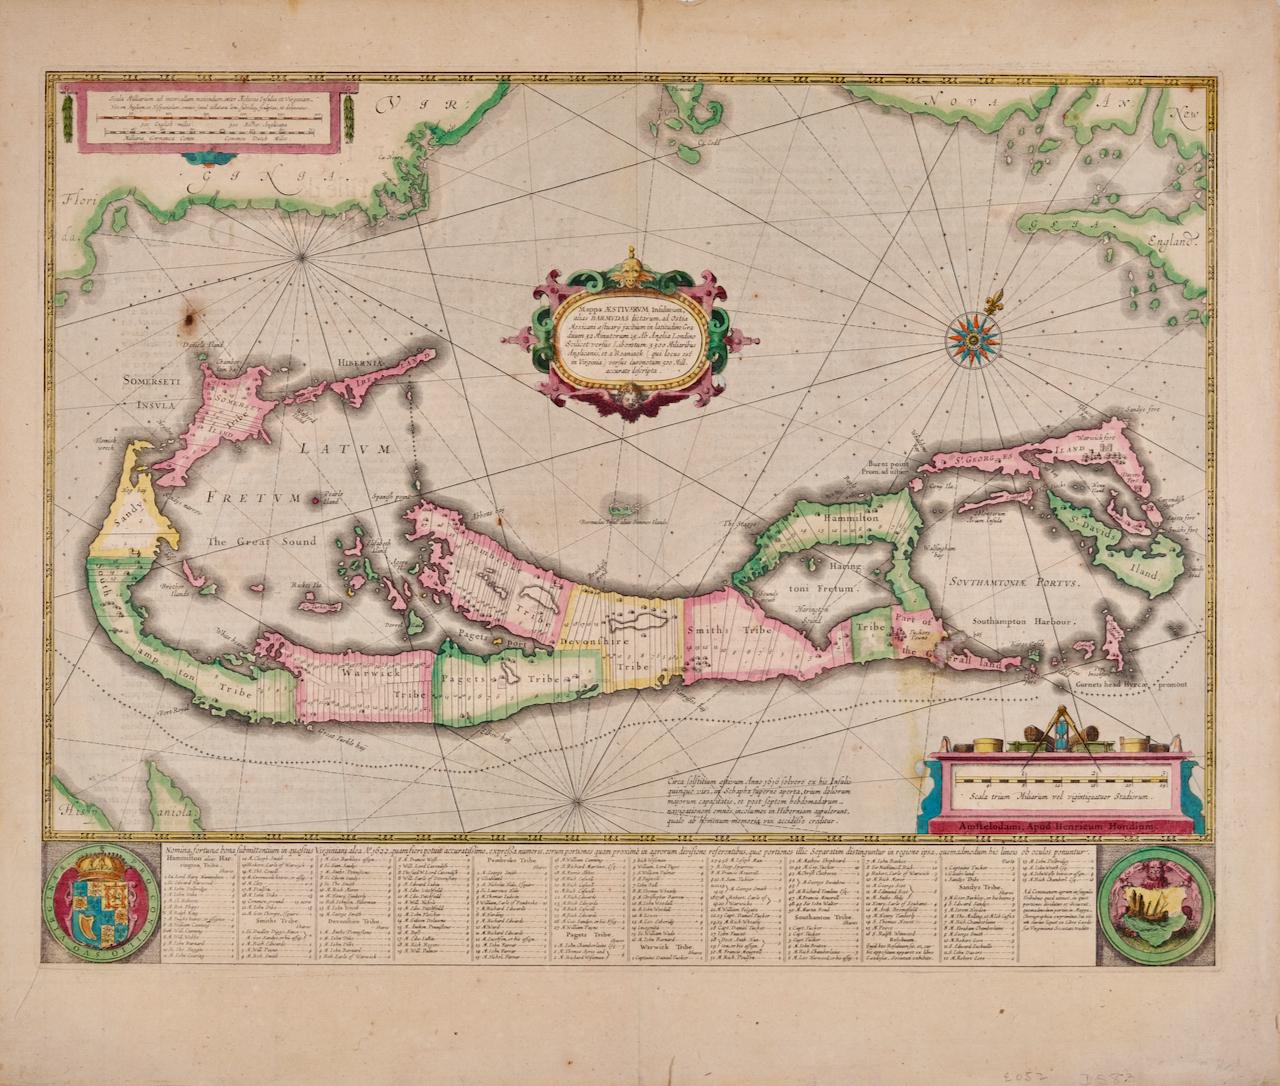 Cette attrayante et intéressante carte des Bermudes réalisée par Henricus Hondius en 1633 est intitulée "Mappa Aestivarum Insularum, Alias Barmudas". Elle est basée sur une étude de Richard Norwood en 1618, qui a conduit à des cartes antérieures de